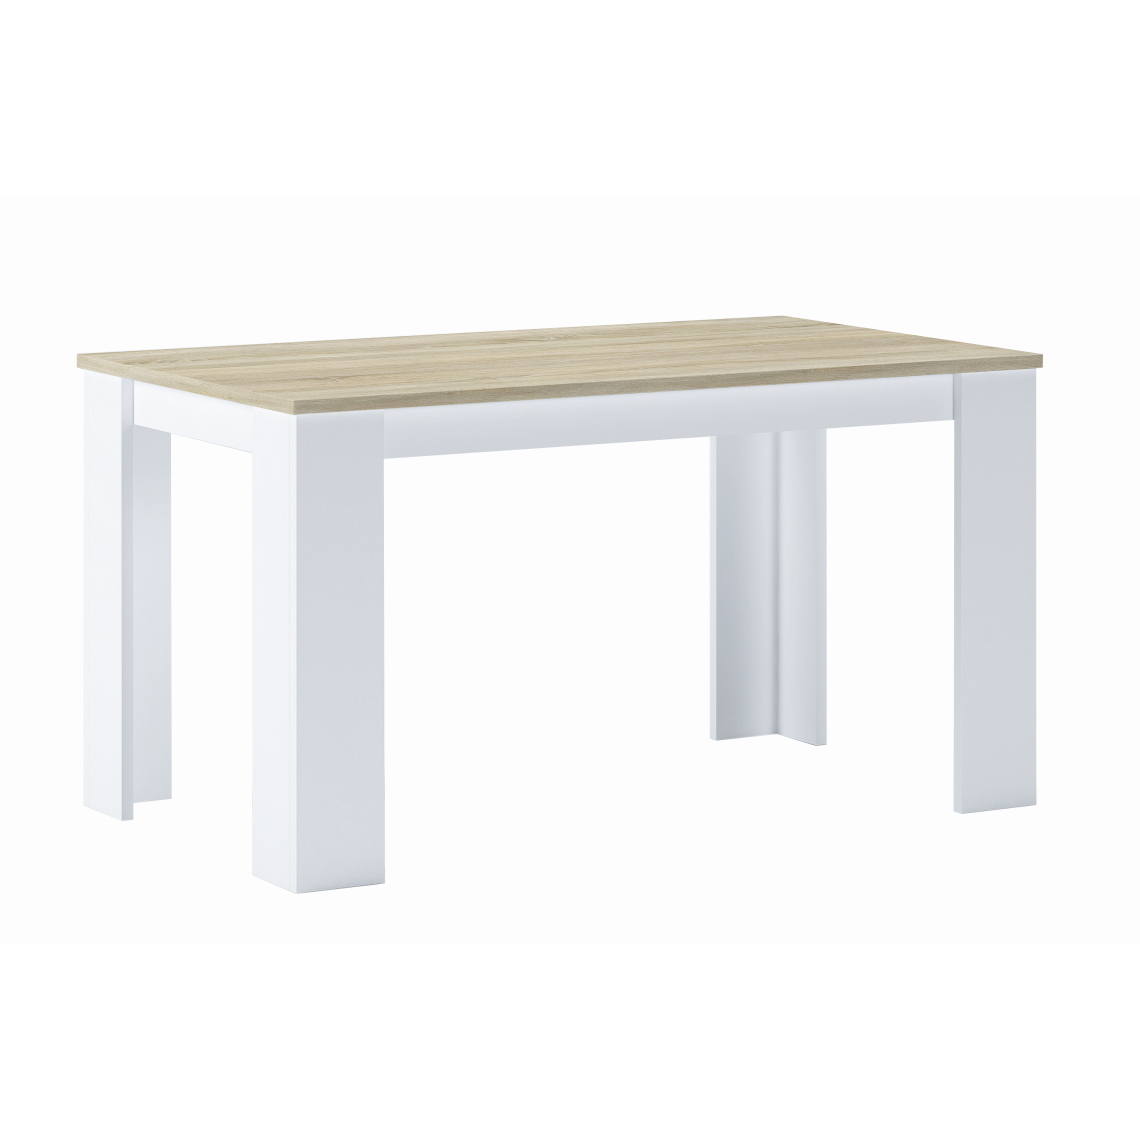 Skraut Home - Table de salle à manger, chêne clair-blanc,80x138x75cm - Tables à manger